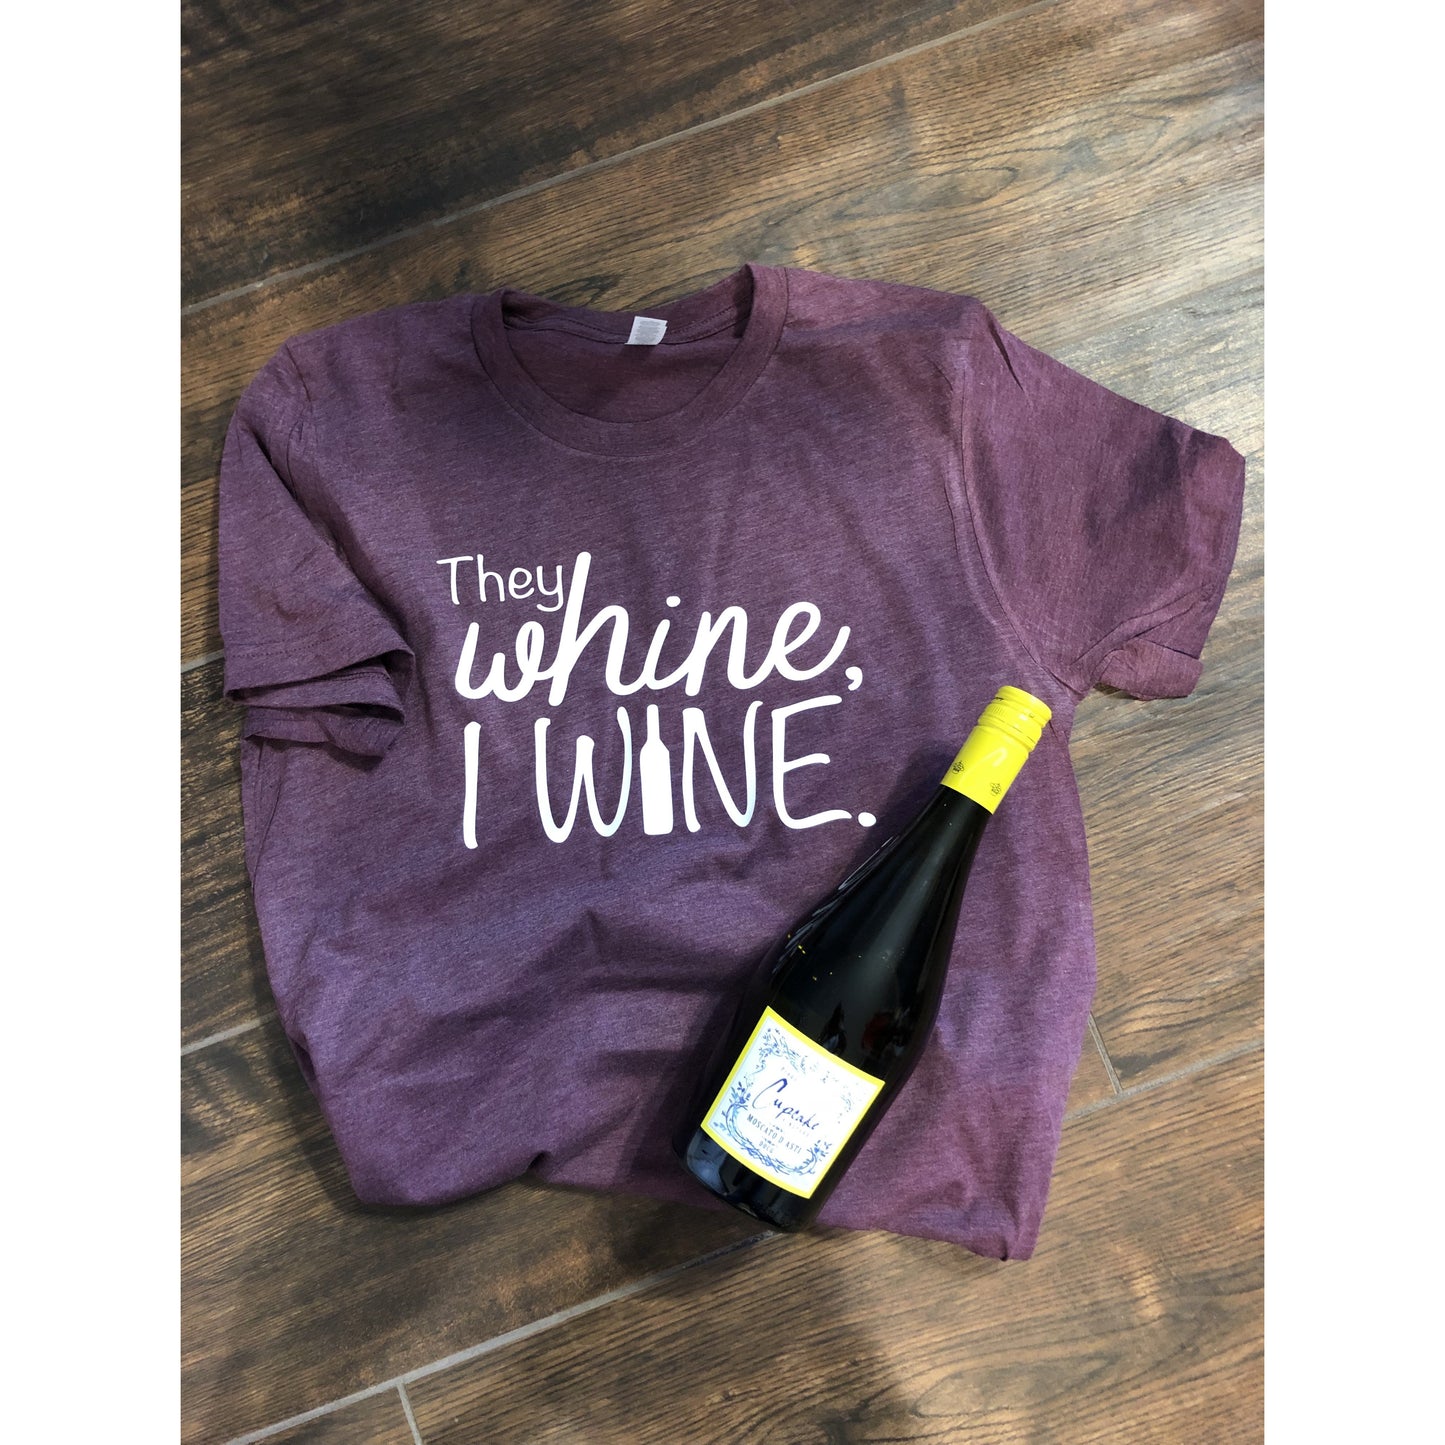 They Whine, I wine shirt